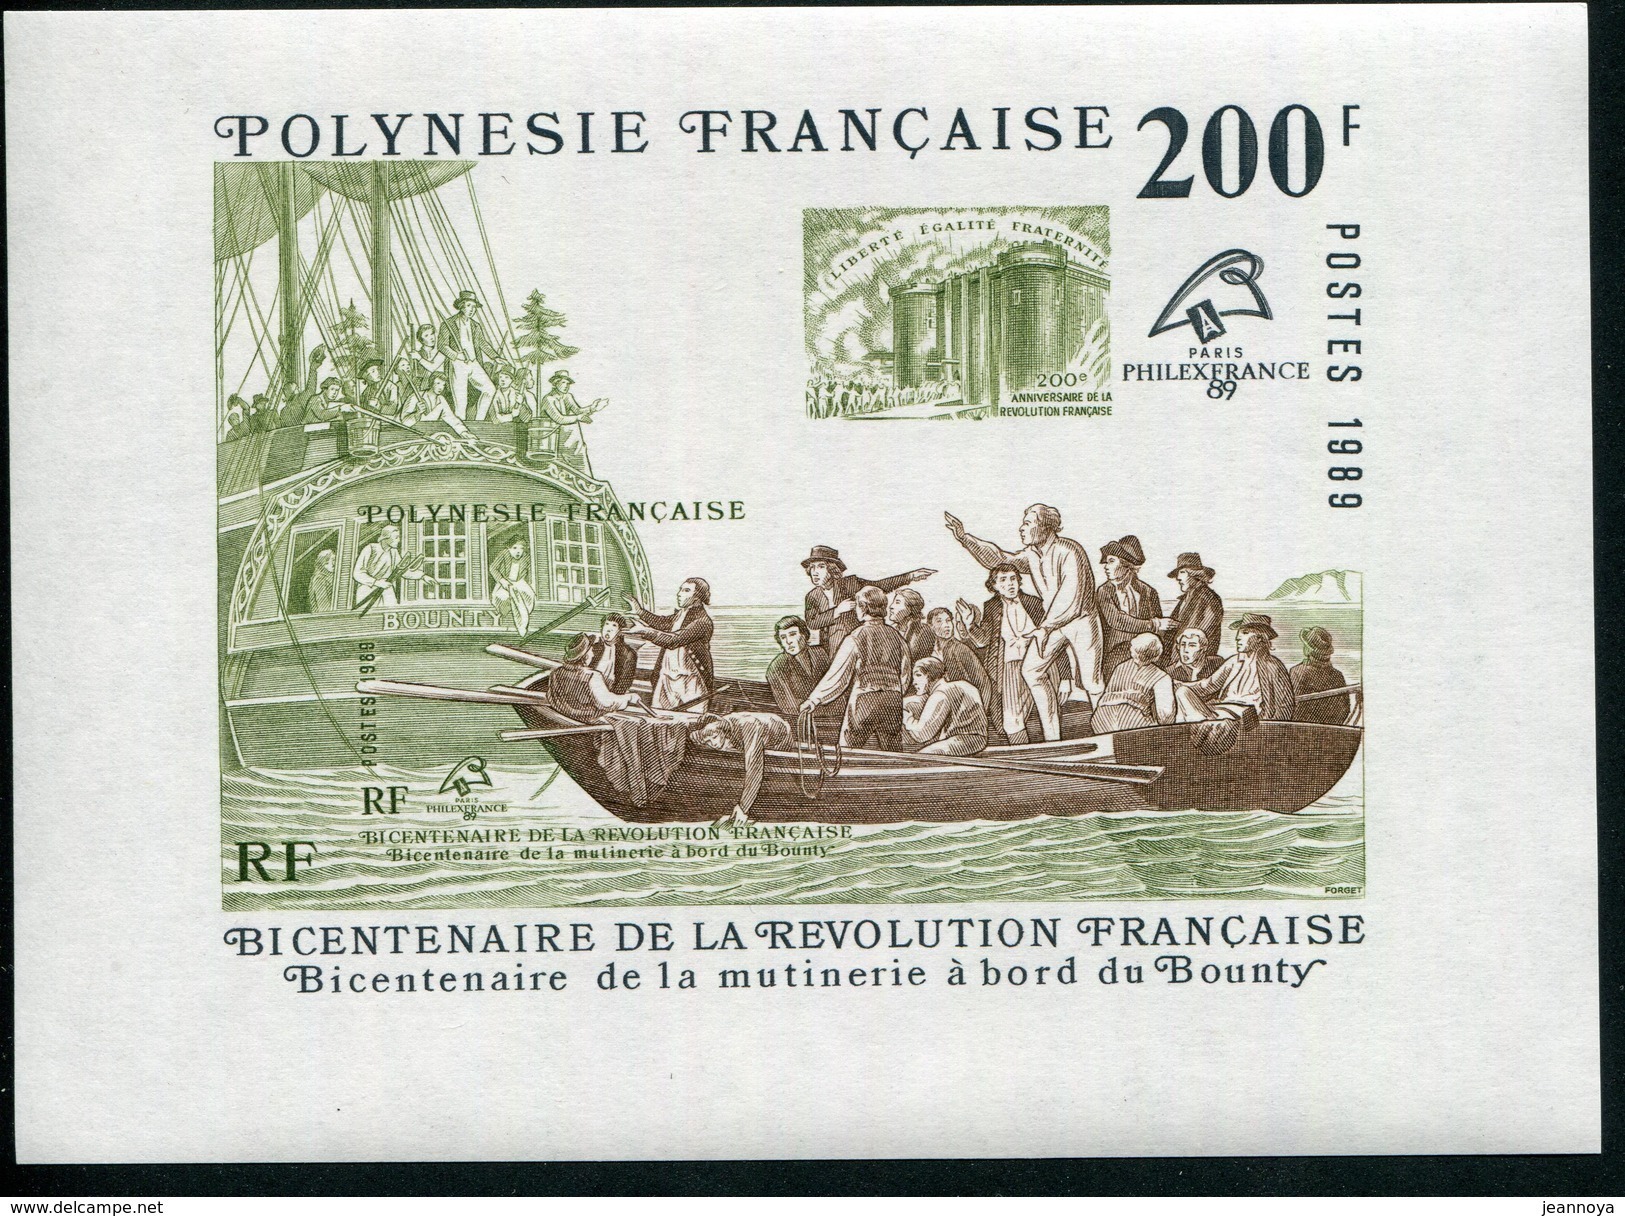 POLYNESIE FRANCAISE - BLOCS & FEUILLETS N° 15  * * - PHILEXFRANCE 1989 - LUXE - Blocs-feuillets